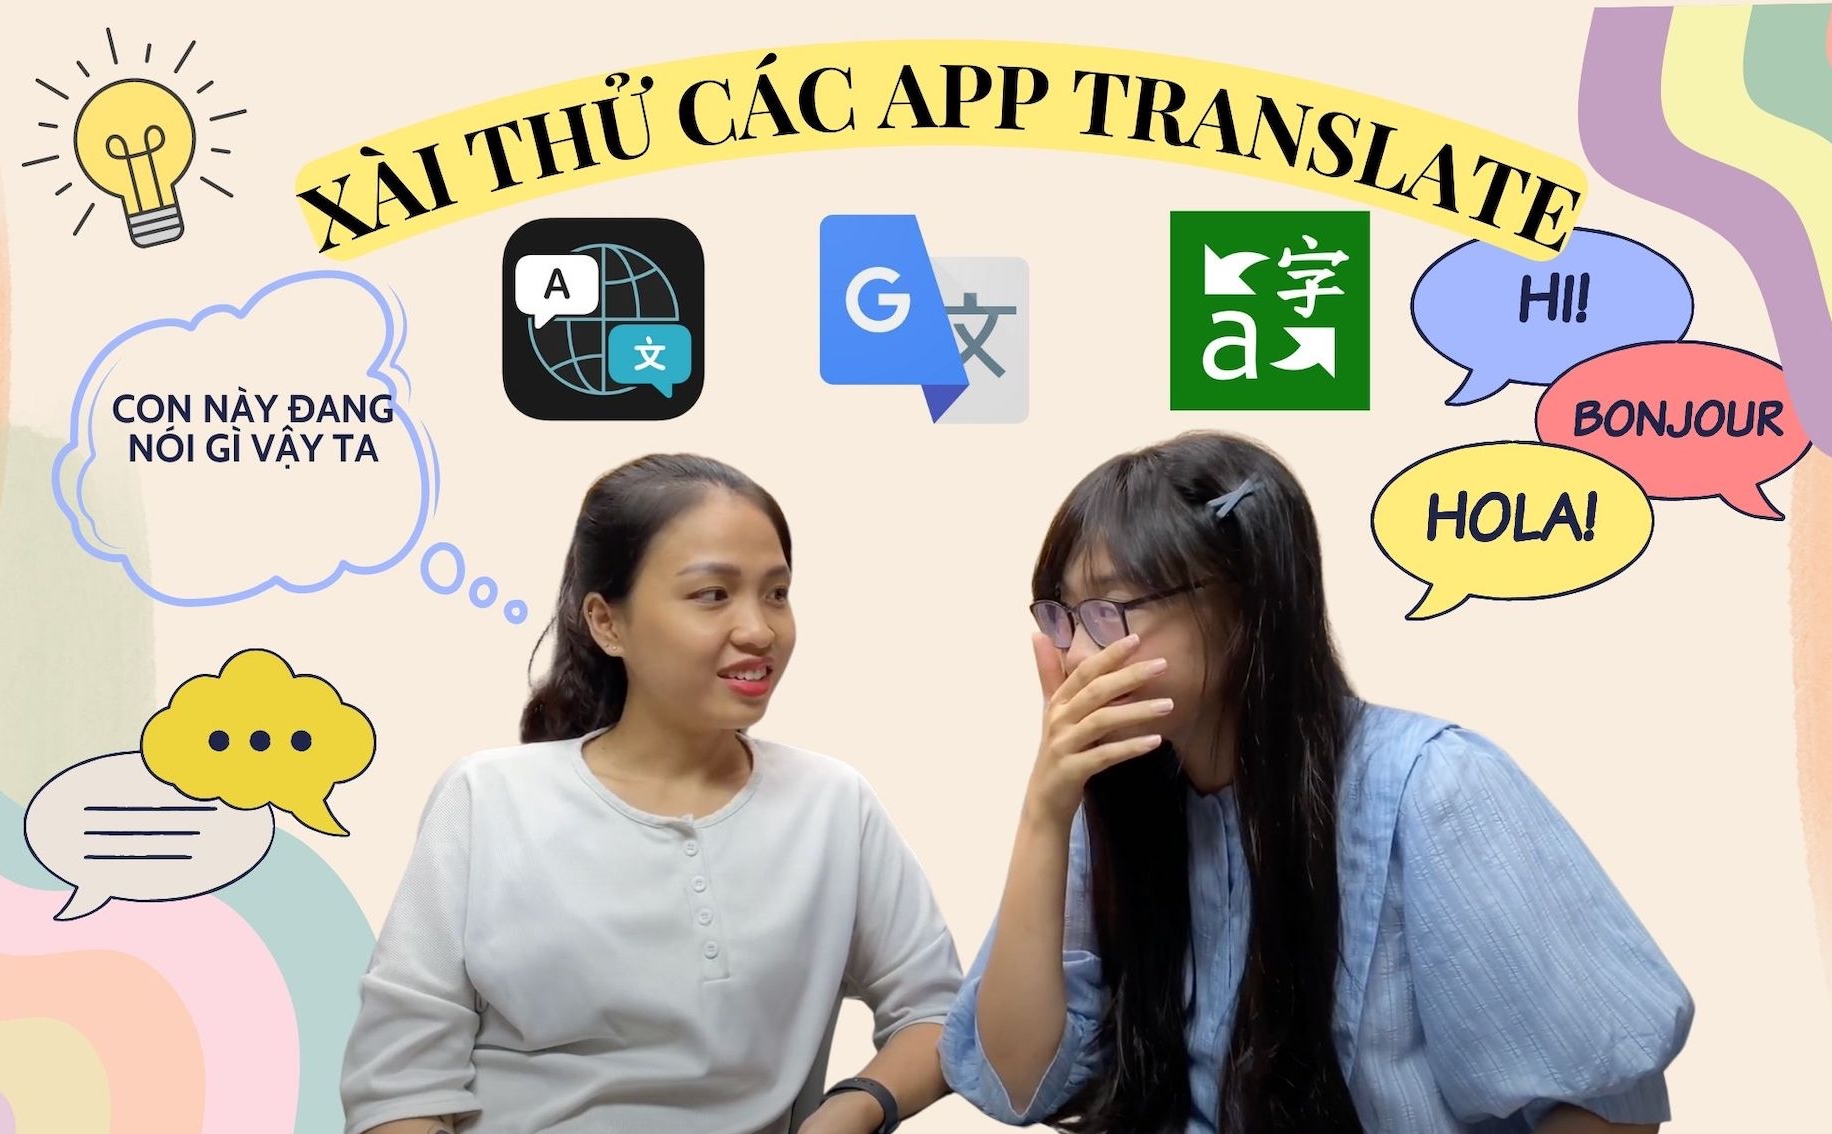 Thử thách nói tiếng Trung và tiếng Tây Ban Nha trên Google, Apple & Microsoft Translate